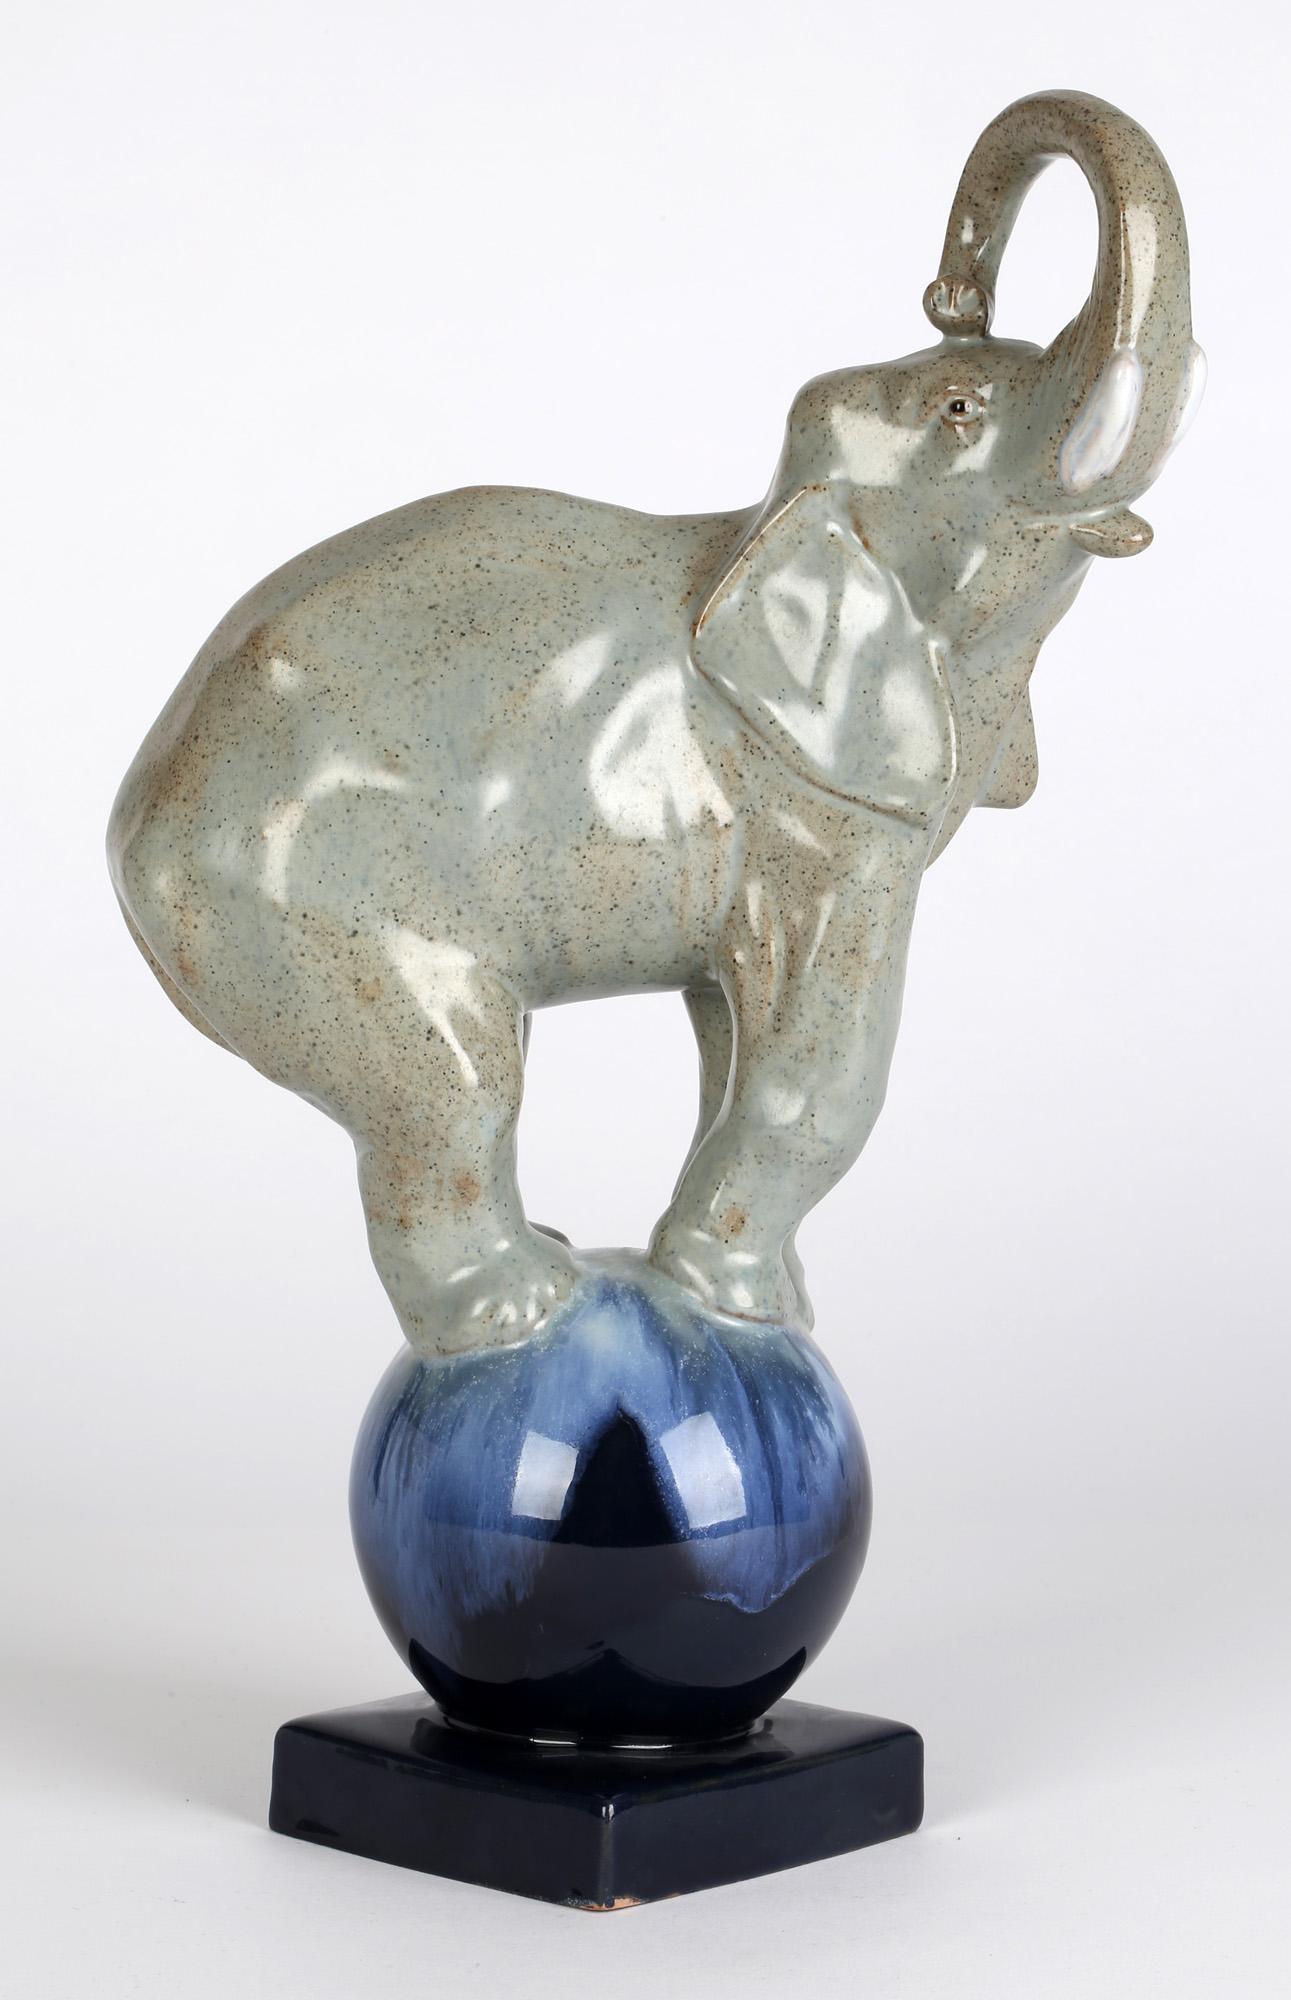 Une étonnante sculpture en poterie émaillée Art déco française représentant un éléphant de cirque en équilibre sur une boule, datant d'environ 1925. La figurine en terre cuite représente un éléphant en équilibre sur une boule arrondie montée sur un